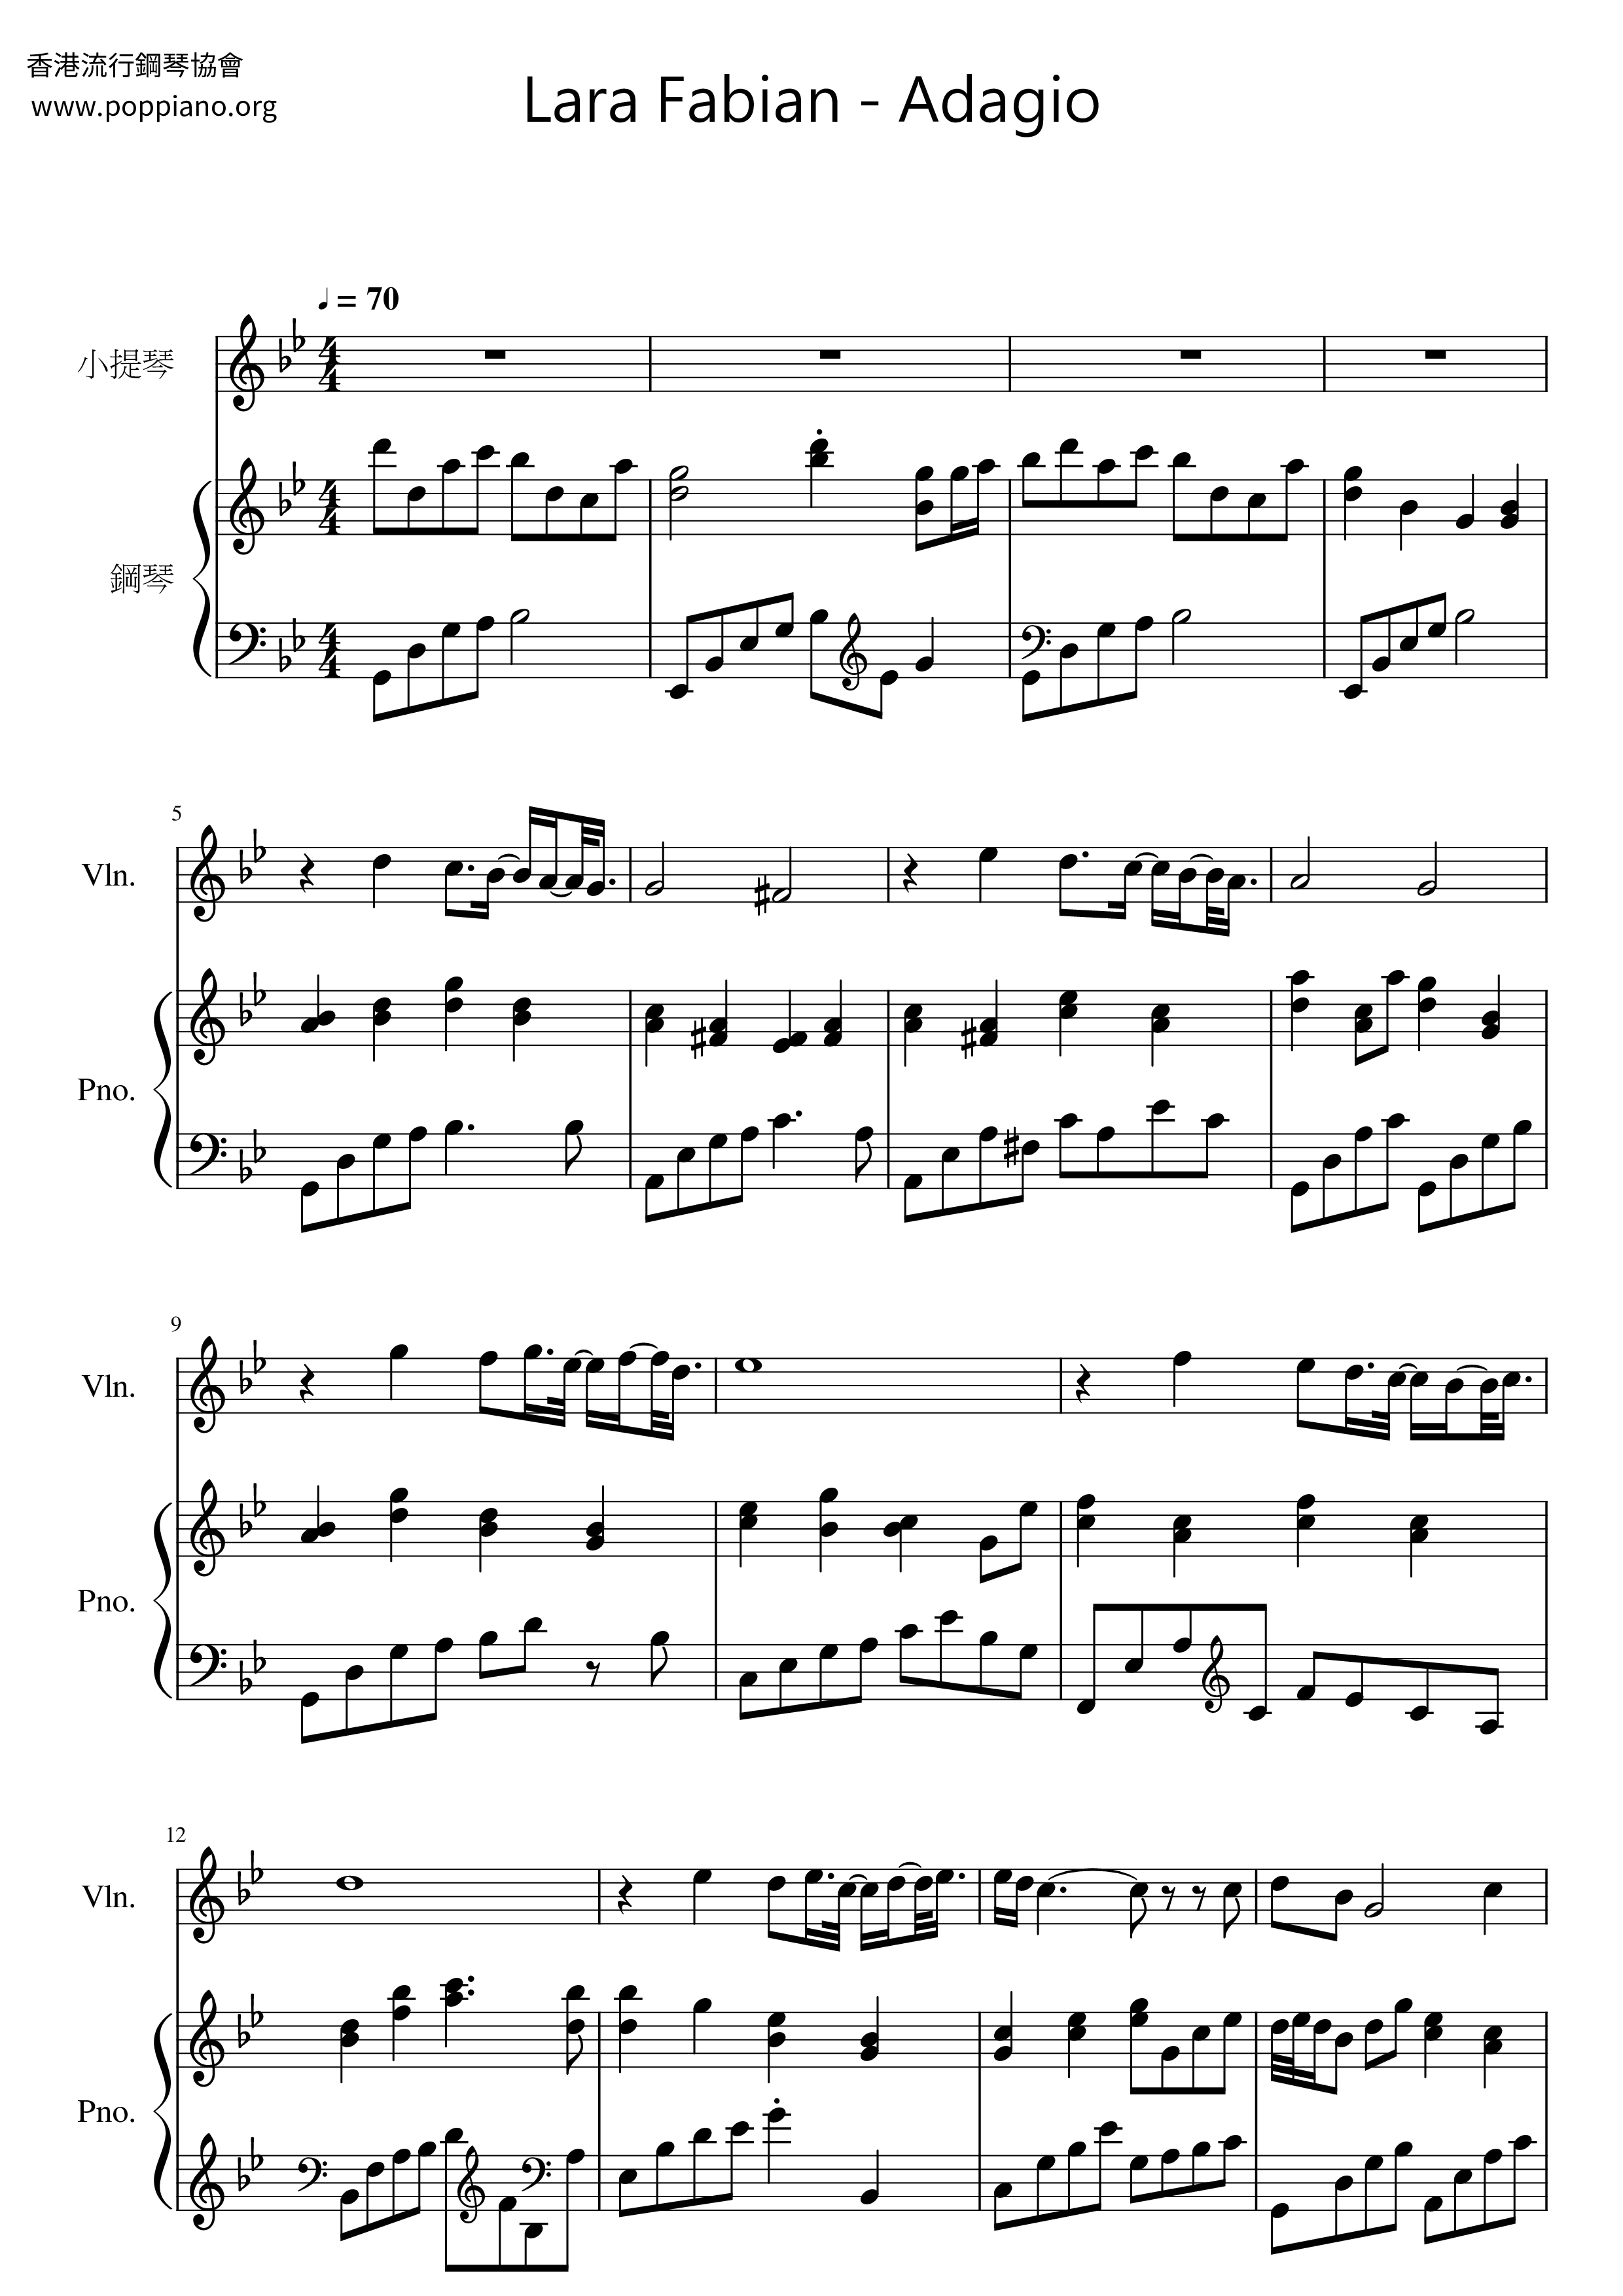 Adagio Score